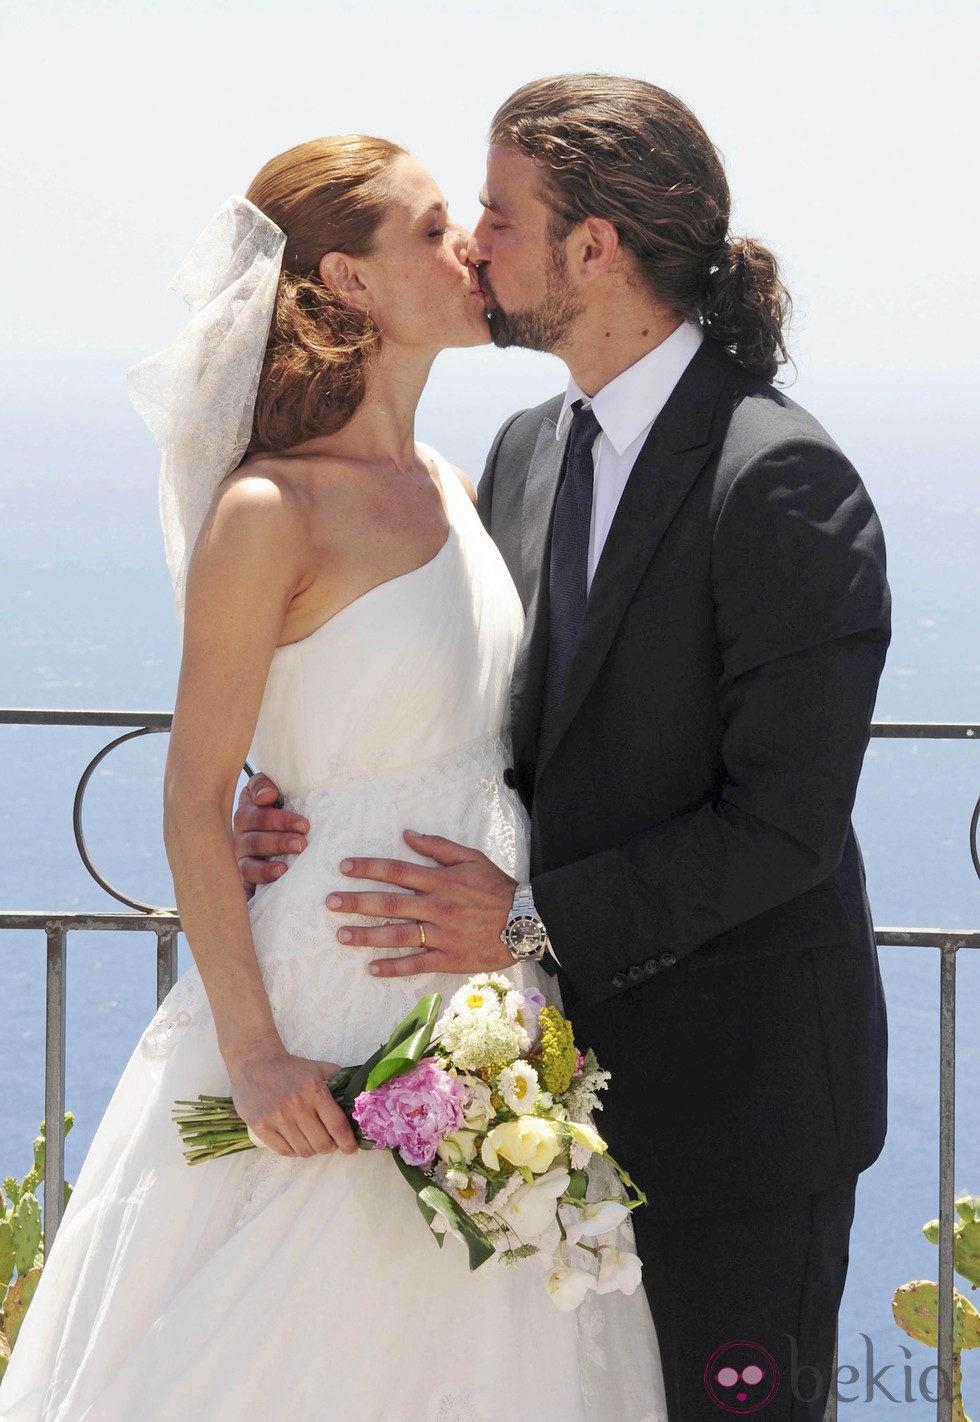 Raquel Sánchez Silva y Mario Biondo besándose el día de su boda